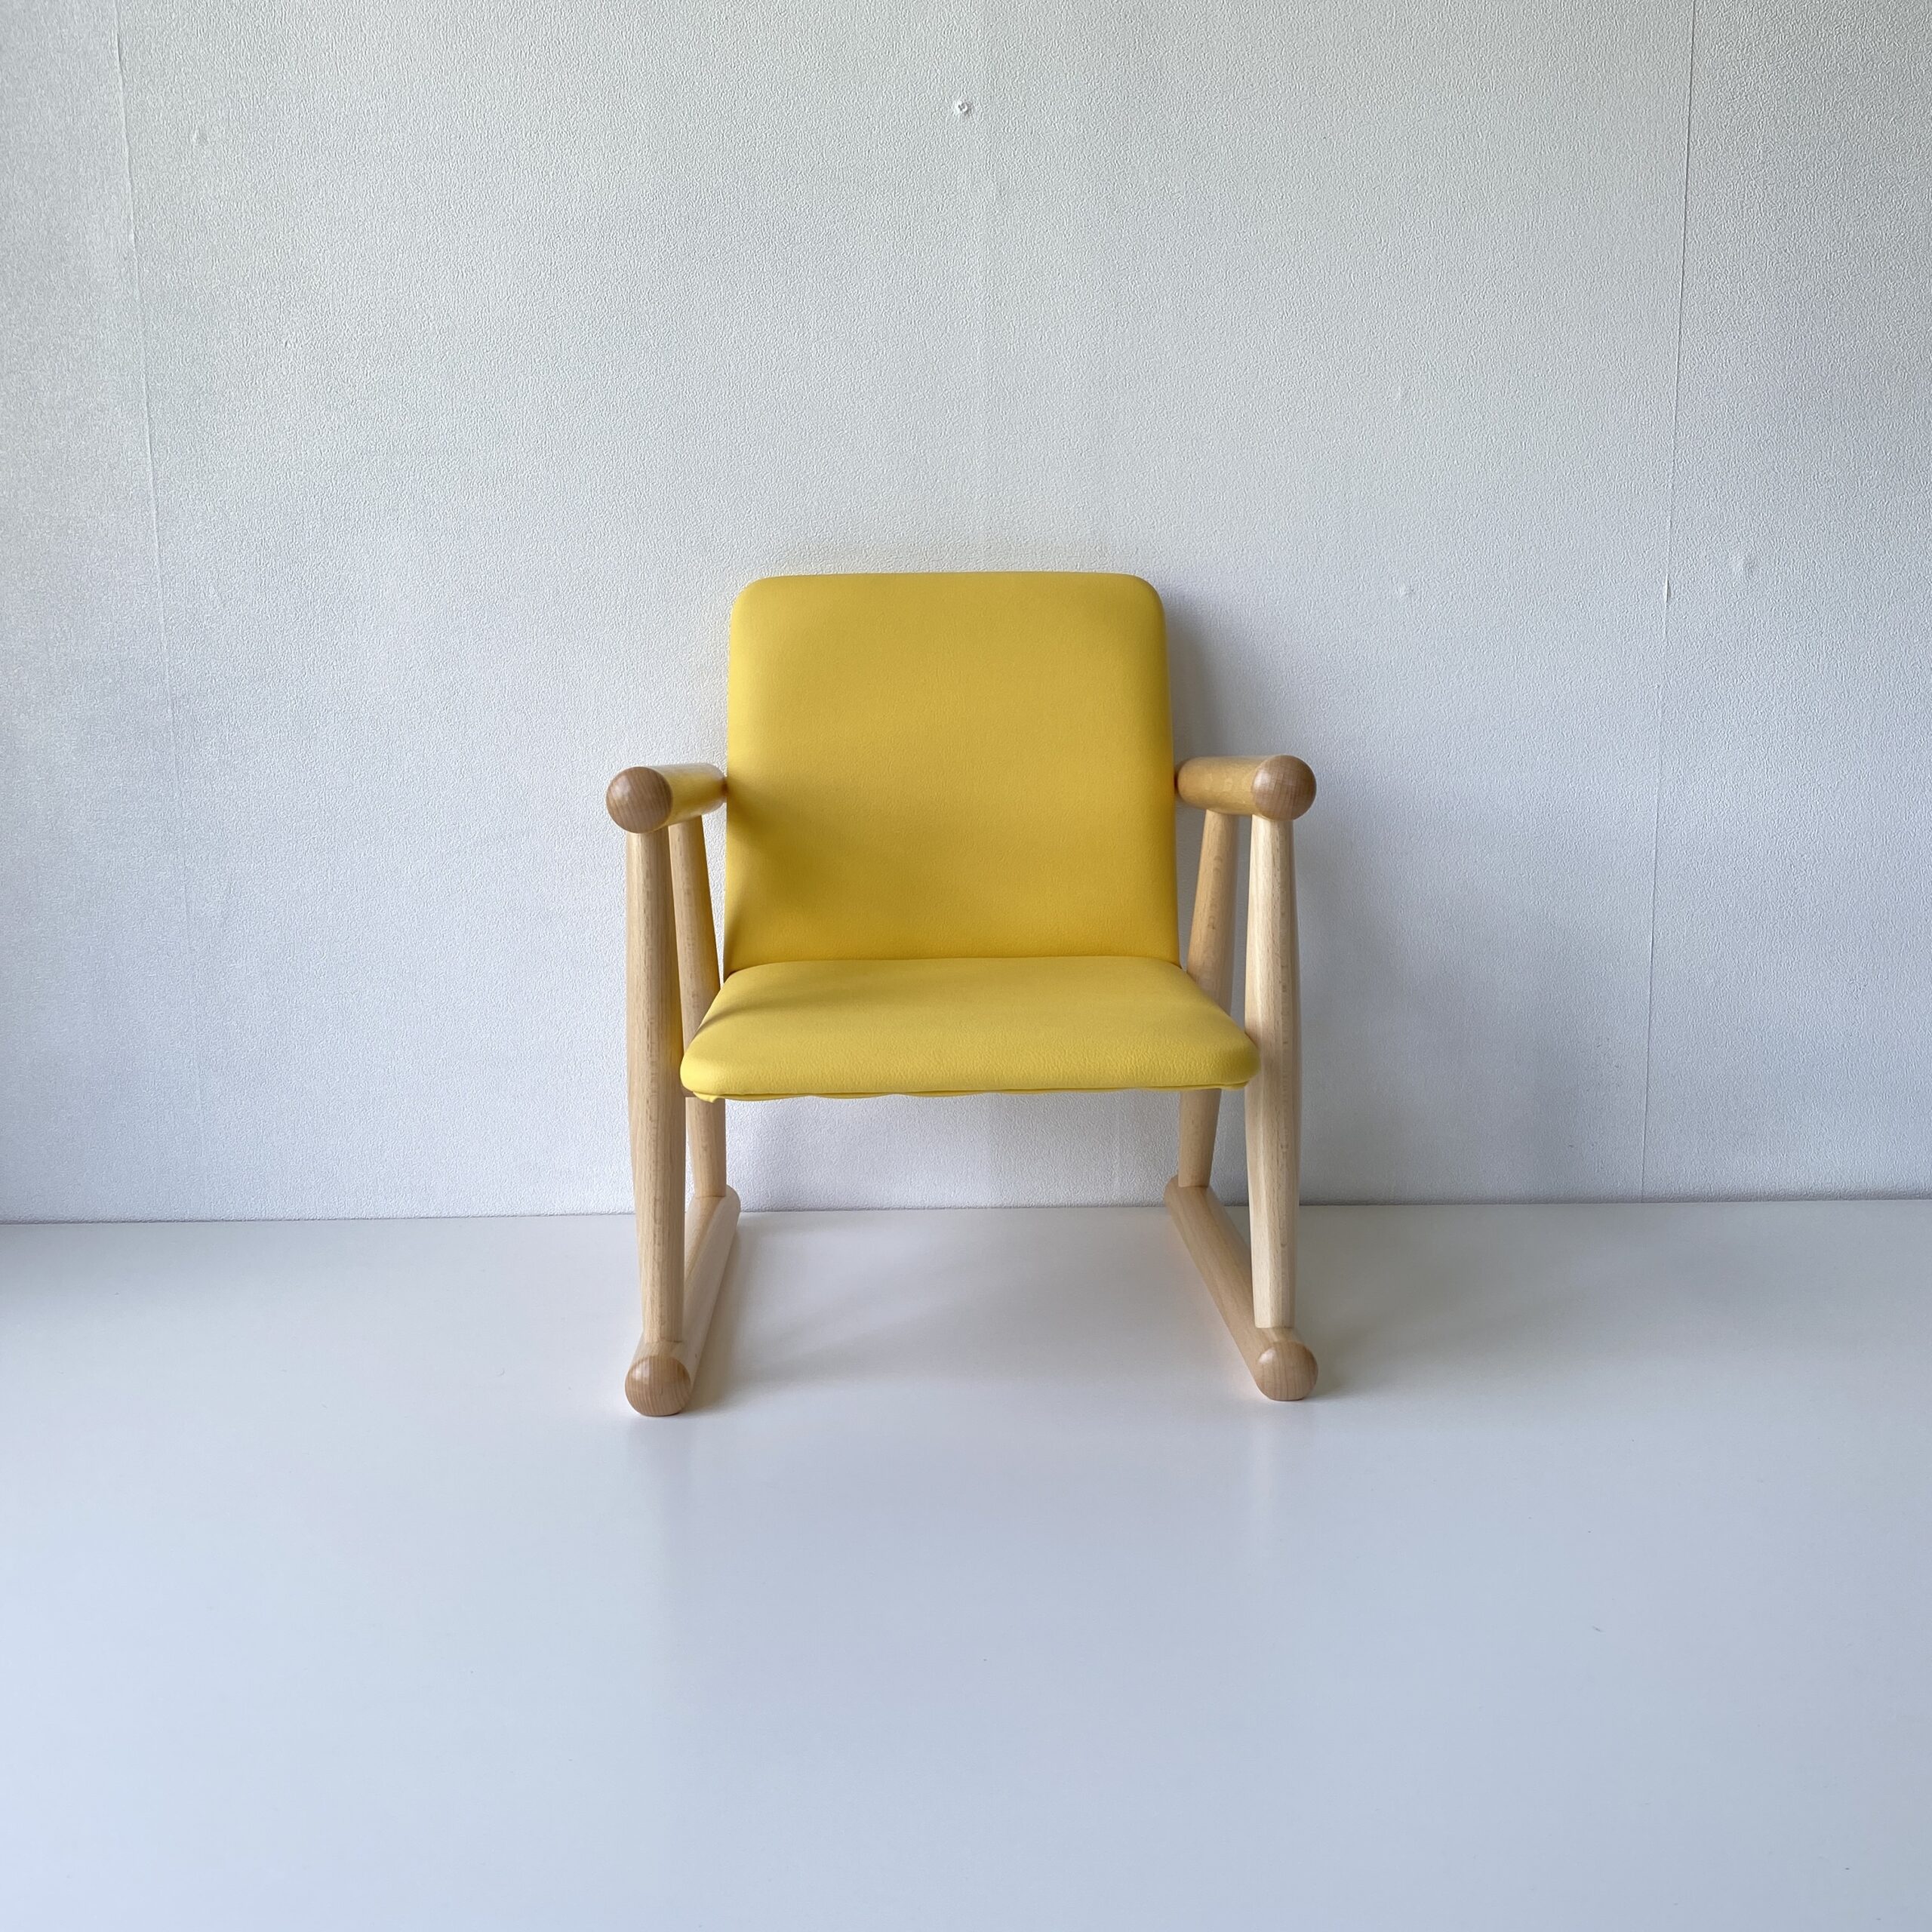 秋田木工 キッズチェア 子供椅子 NO.100R ブナ材 黄色 ナチュラル色